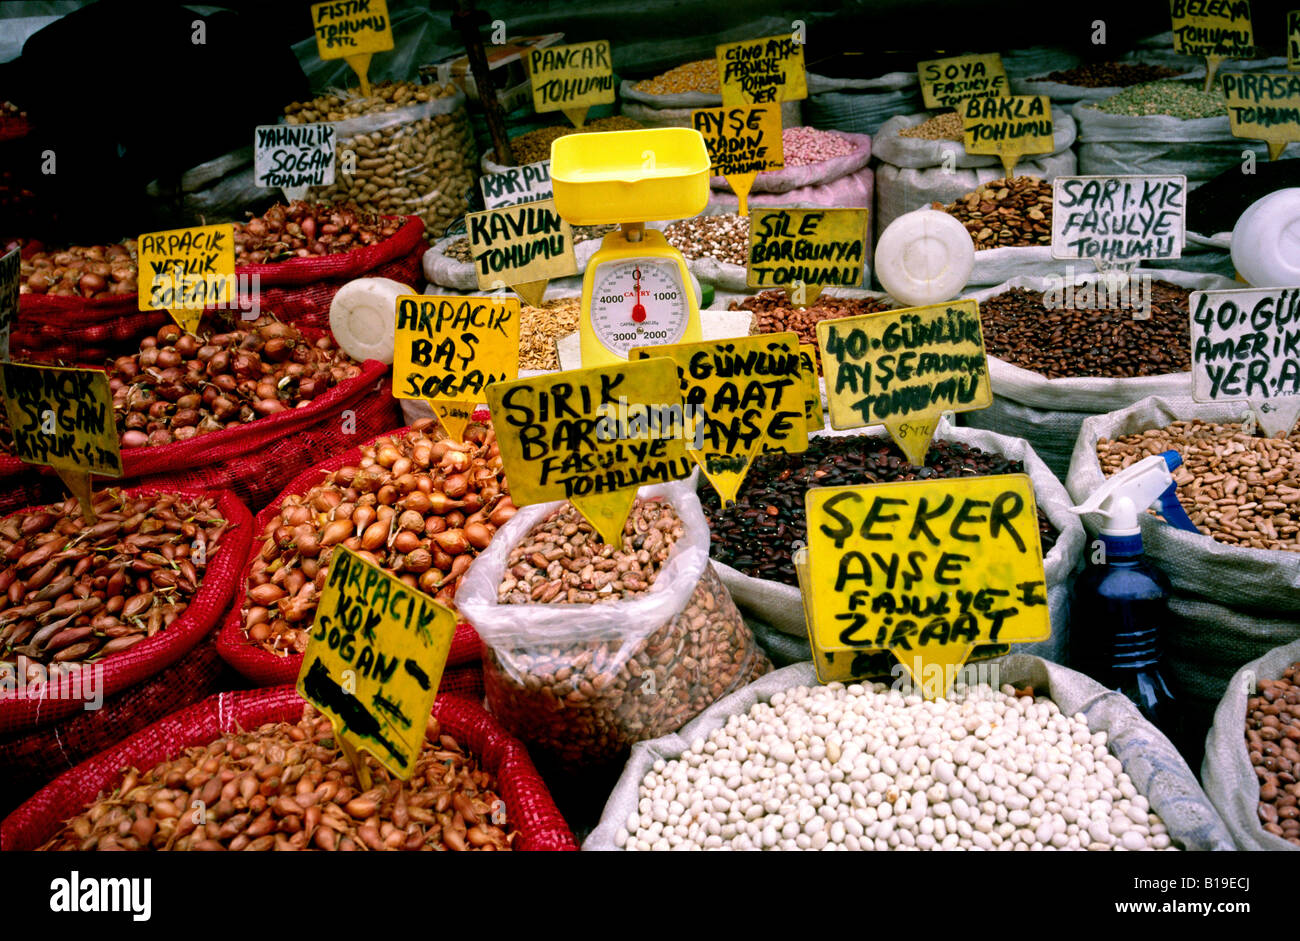 Marzo 12, 2006 - El bazar egipcio o de las especias en Eminönü de Estambul. Foto de stock